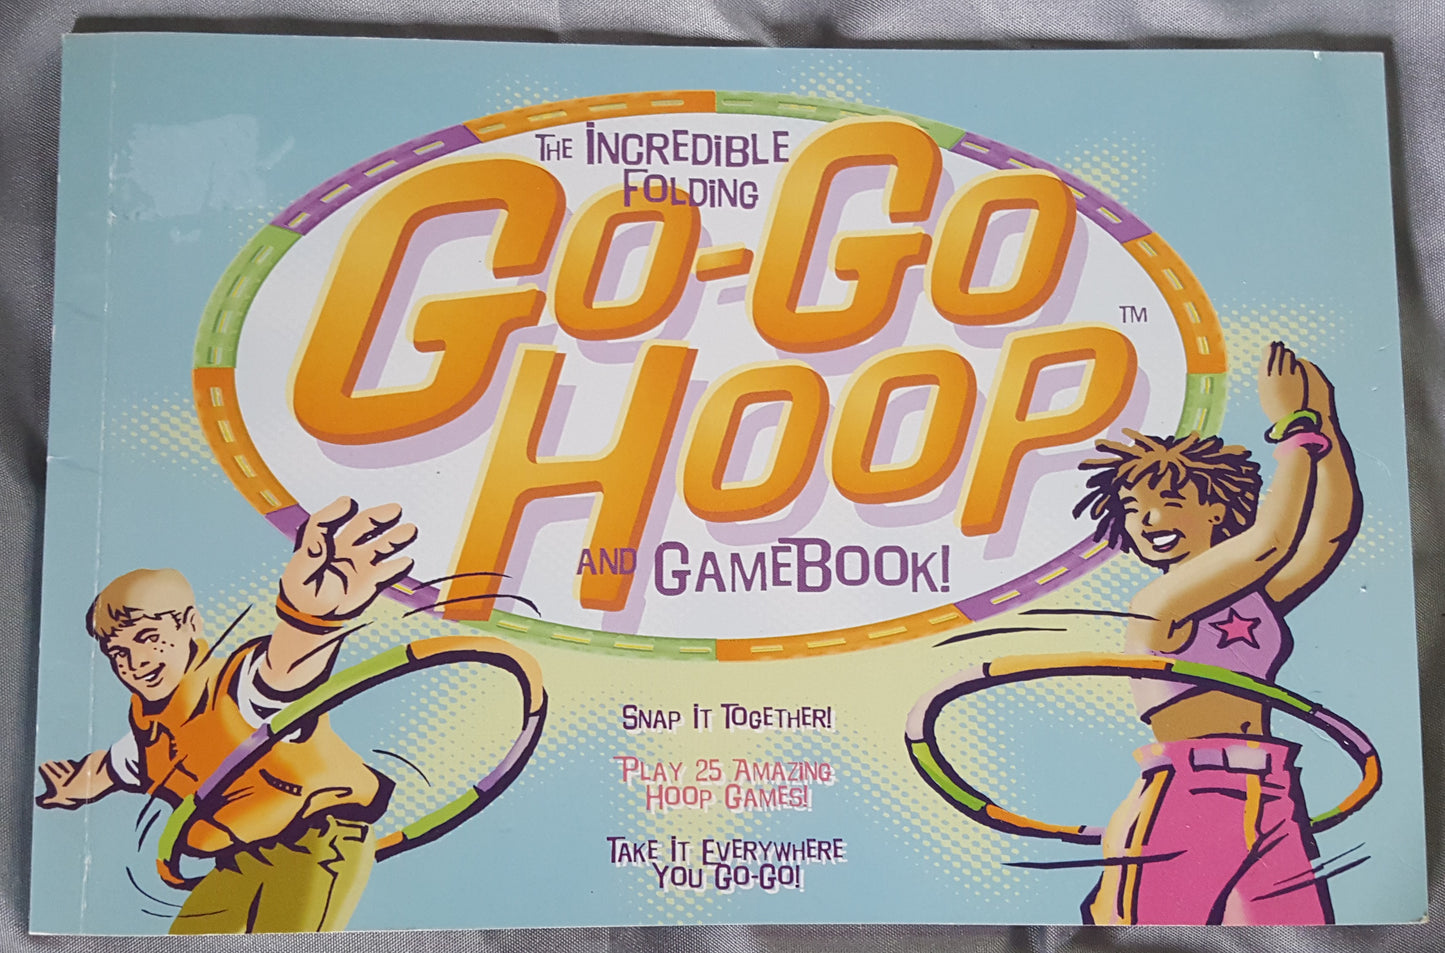 Go Go Hoop Gamebook